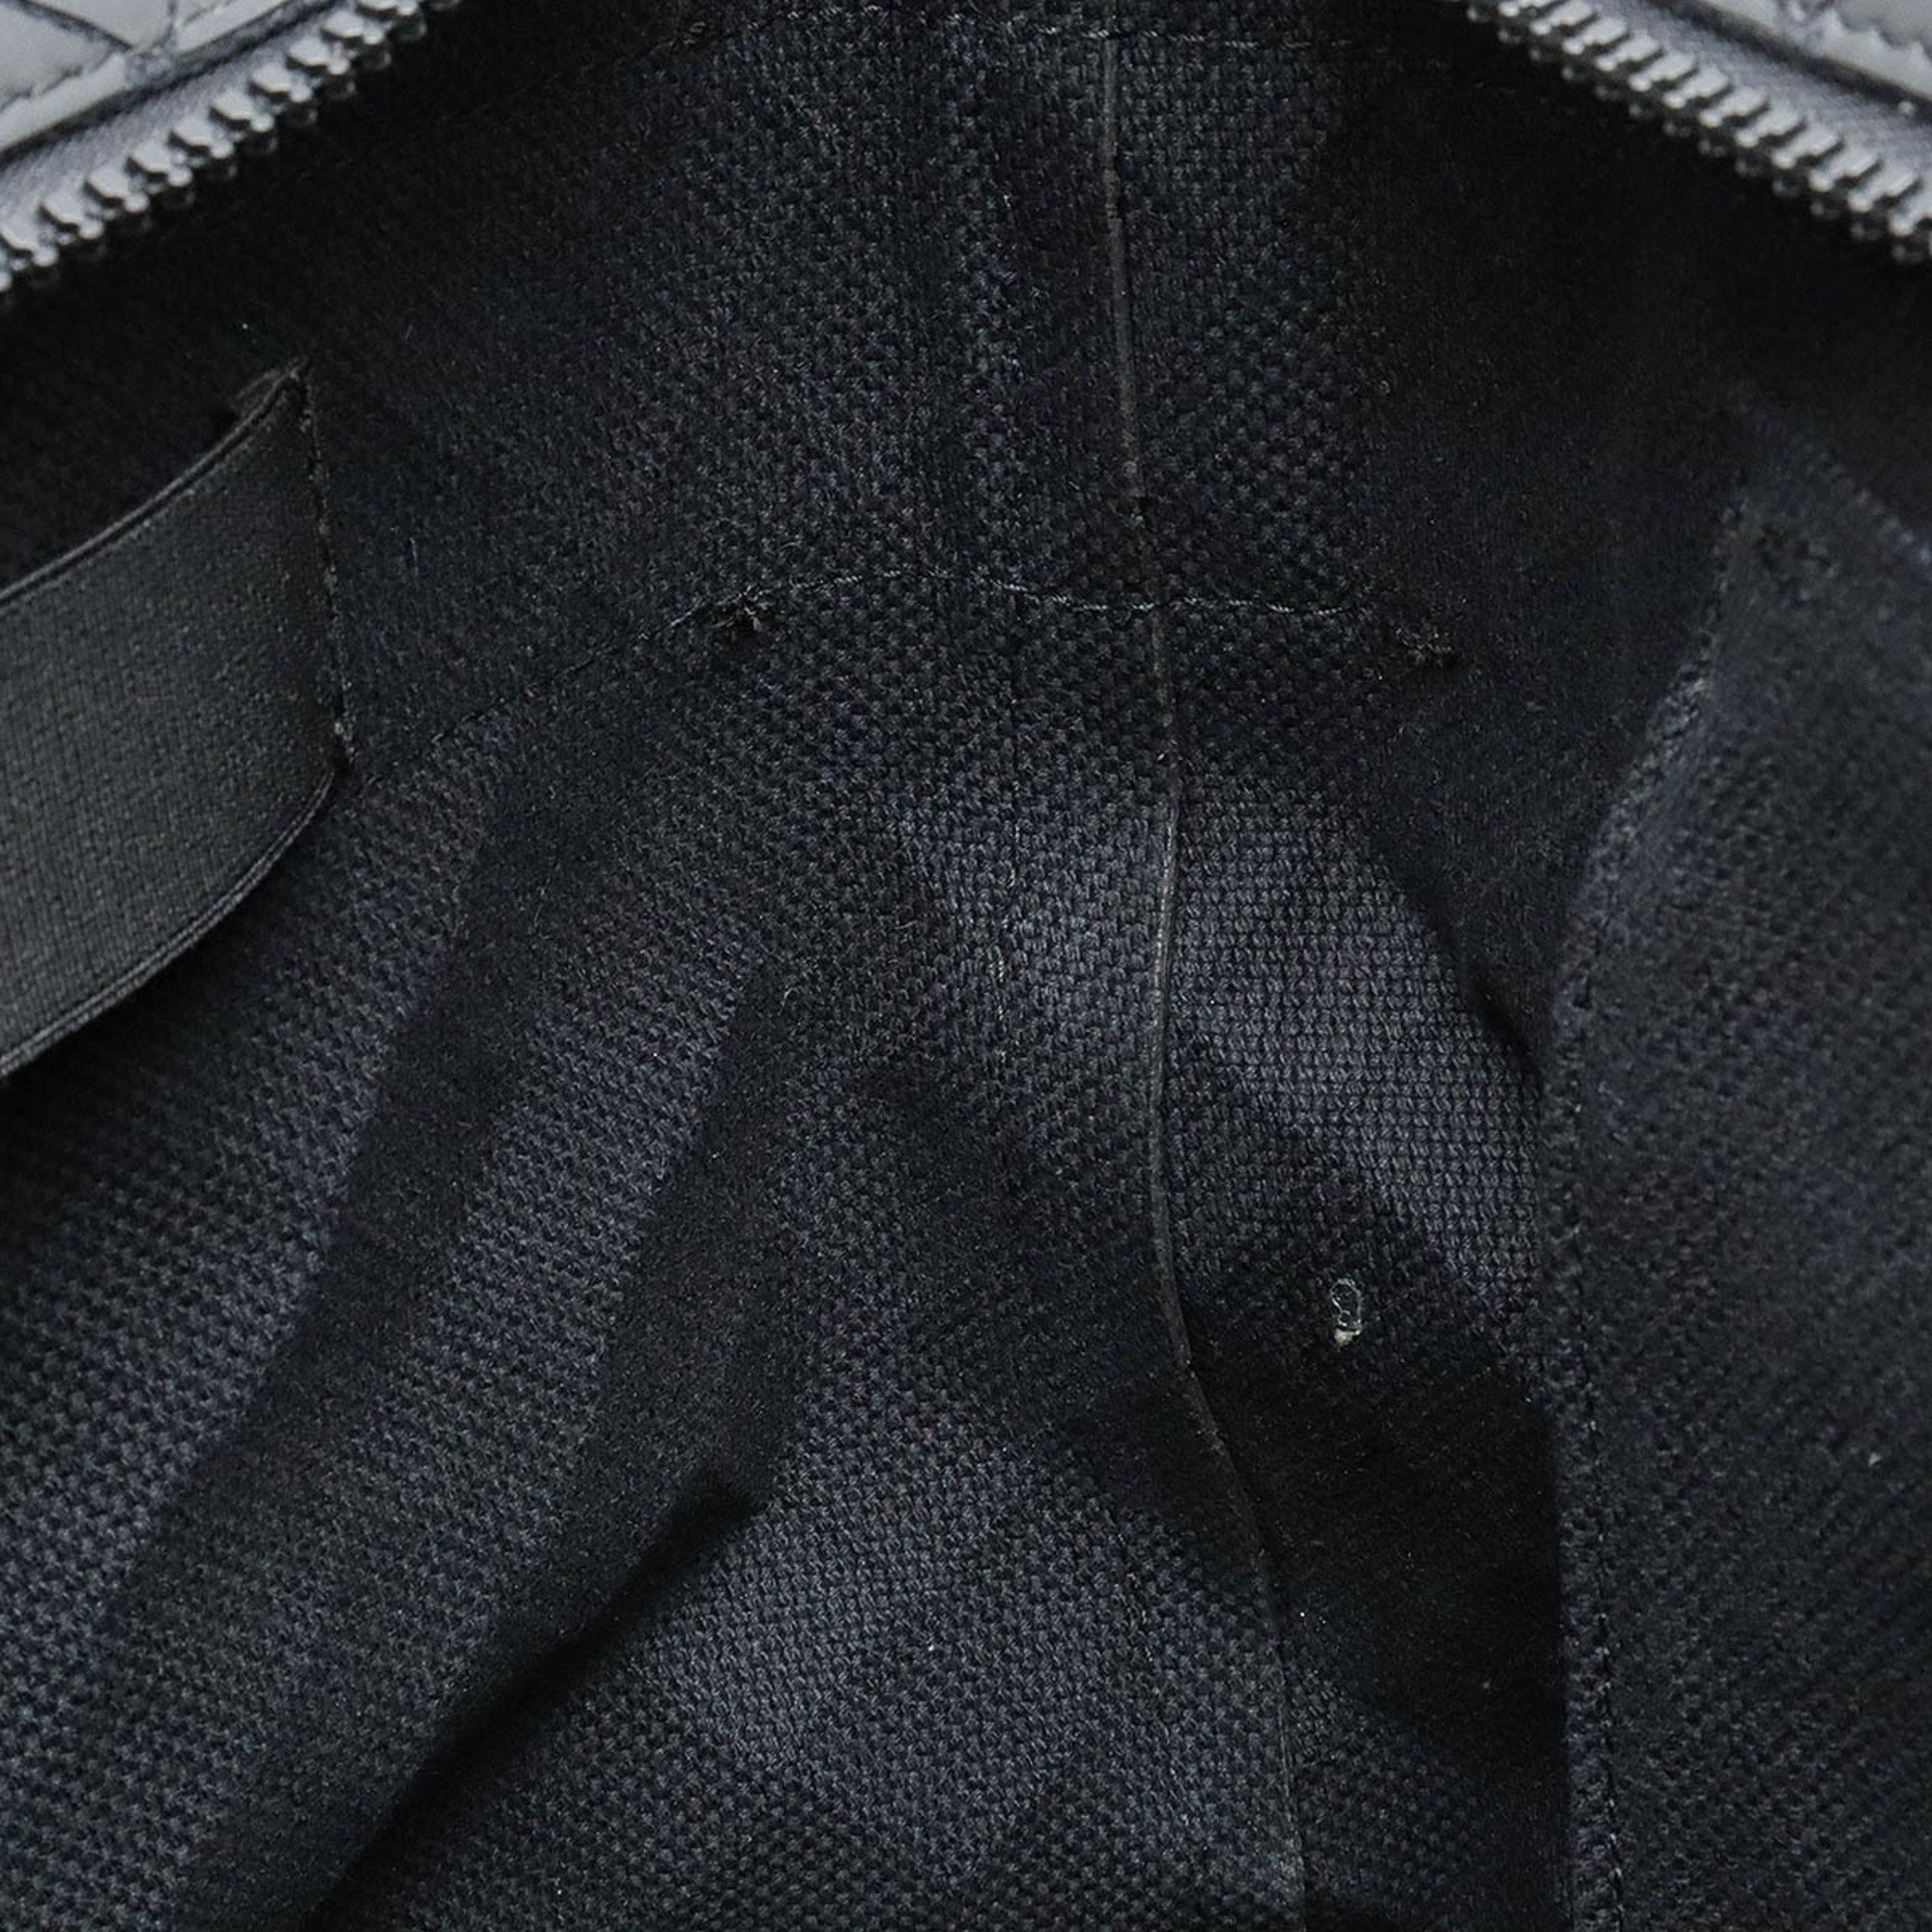 BOTTEGA VENETA New Rubber Intrecciato Tote Bag Shoulder Black 651681